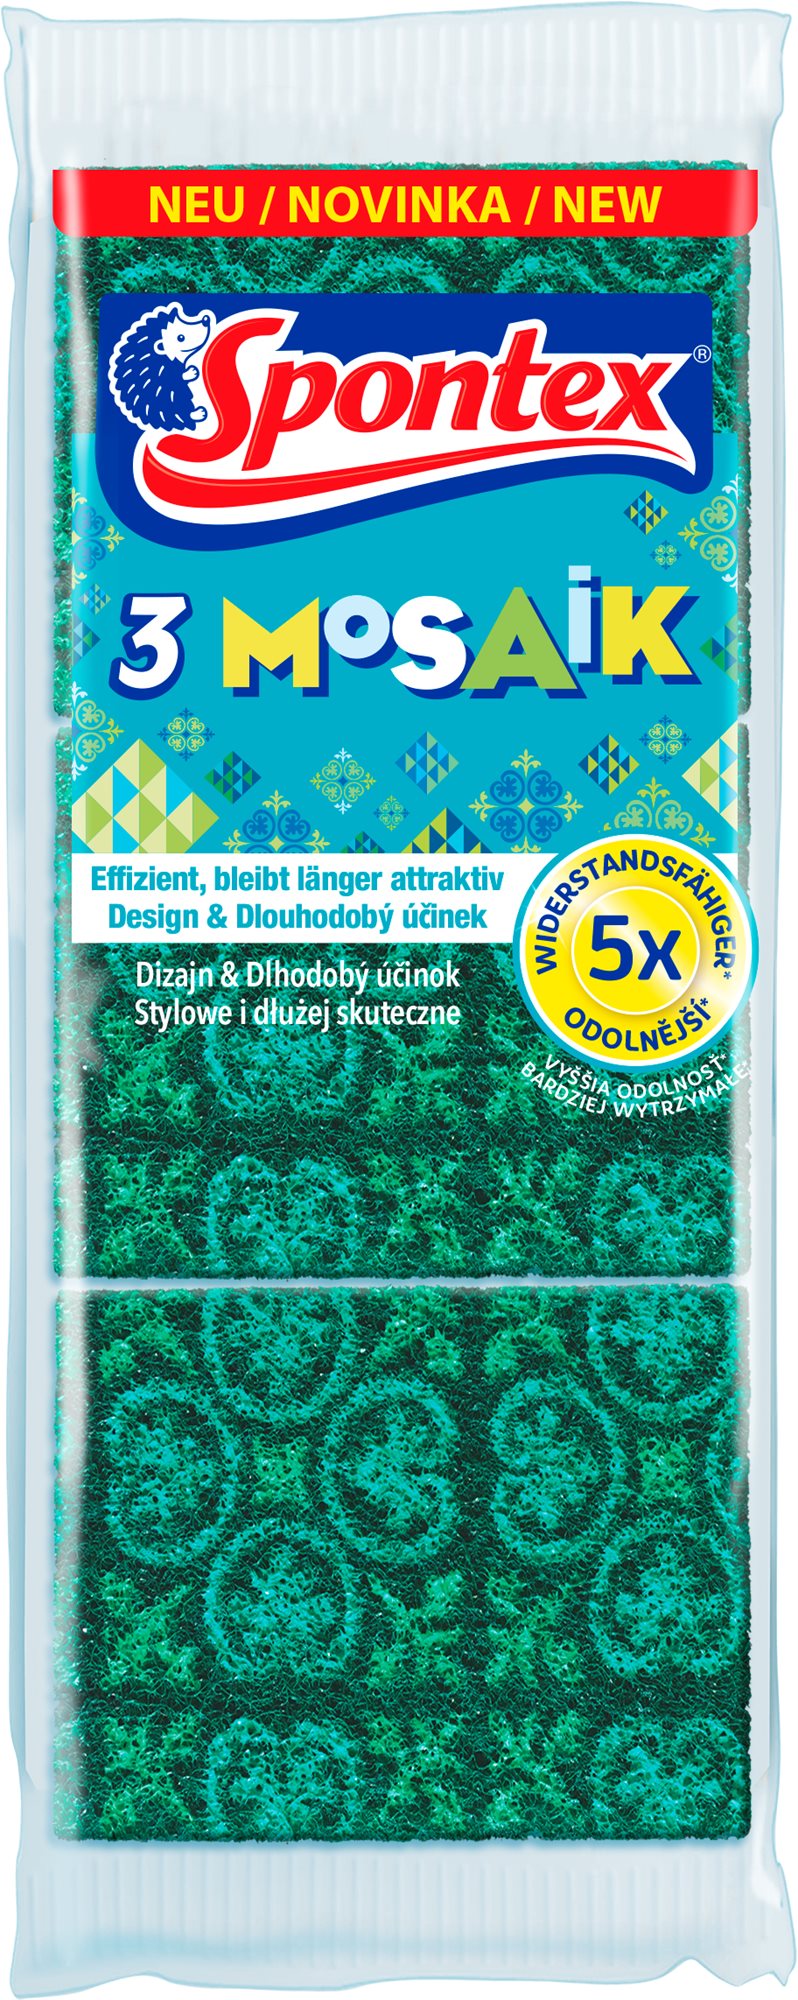 Mosogatószivacs SPONTEX 3 Mozaik konyhai szivacs (3 db)